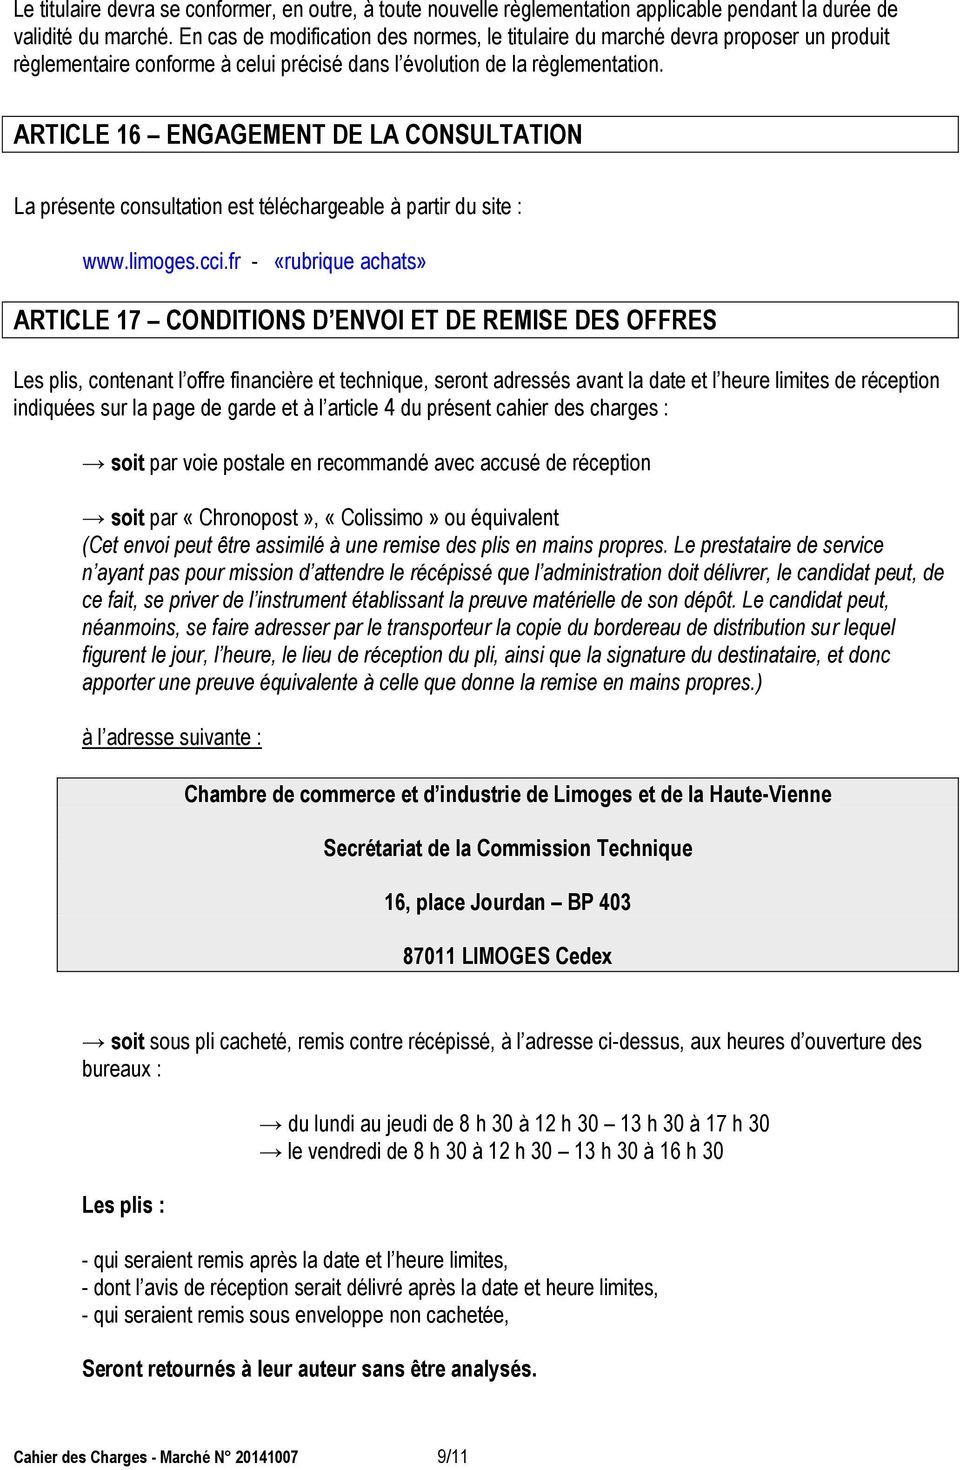 ARTICLE 16 ENGAGEMENT DE LA CONSULTATION La présente consultation est téléchargeable à partir du site : www.limoges.cci.